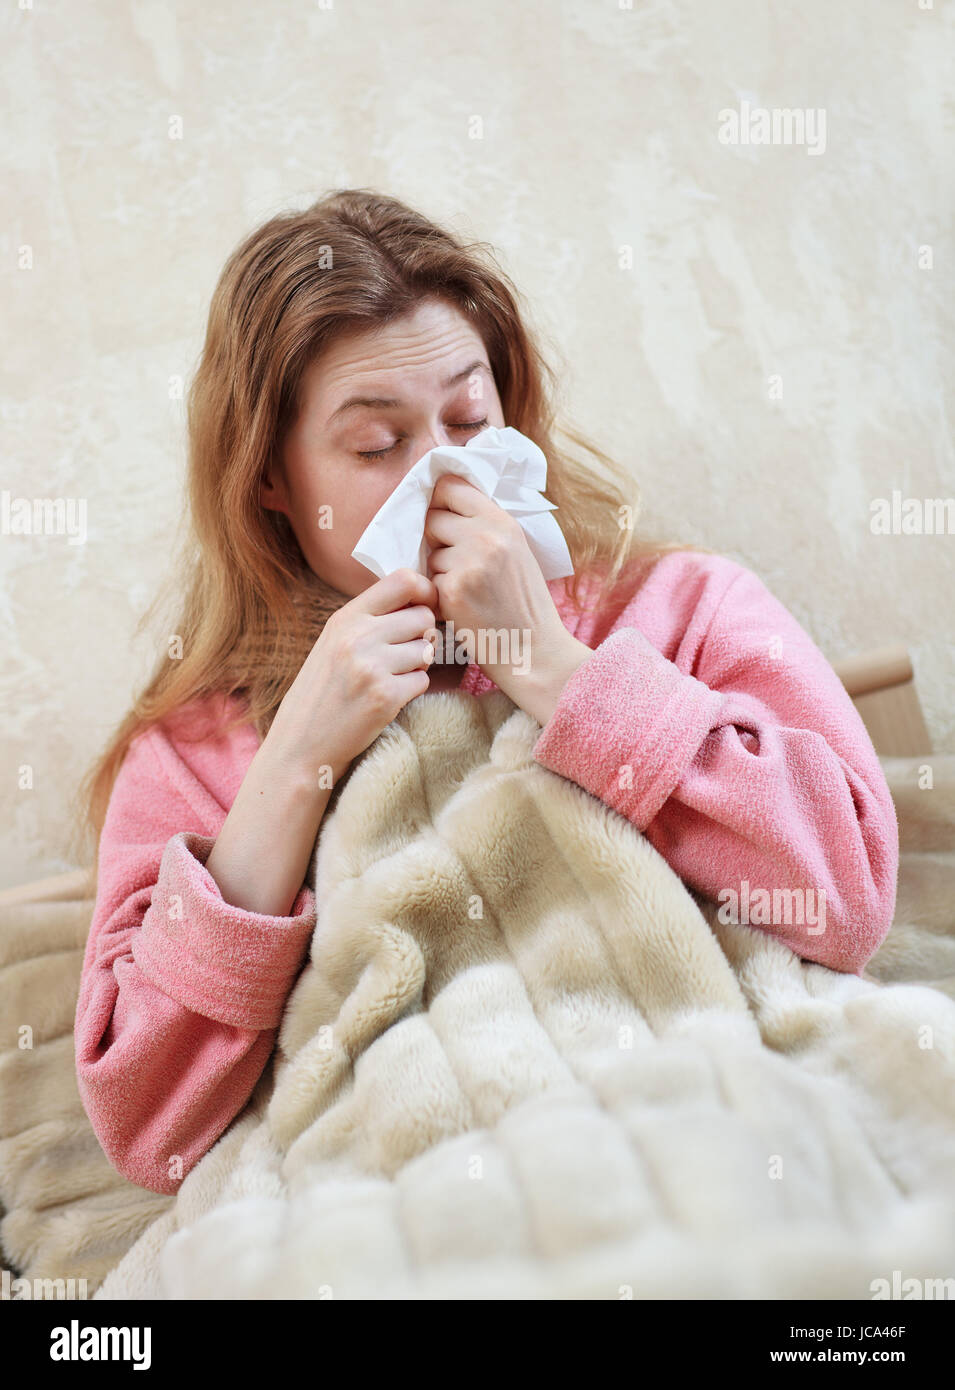 Mujer joven con gripe y rinitis acostado en la cama Foto de stock